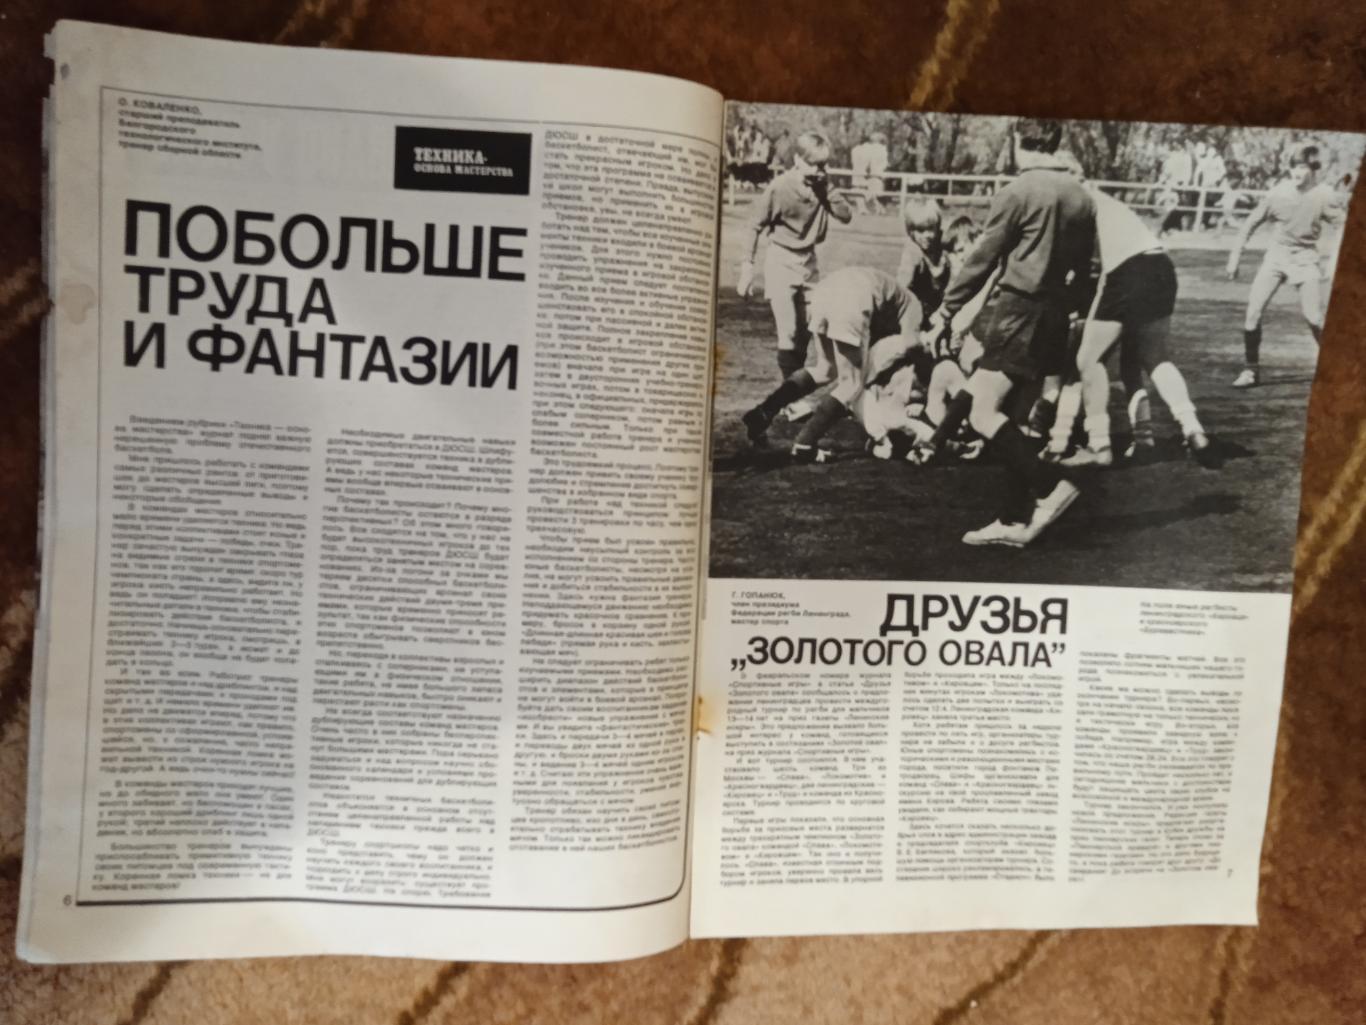 Журнал.Спортивные игры № 8 1978 г. Футбол,хоккей,волейбол,регби.ЧМ 78.Аргентина. 2